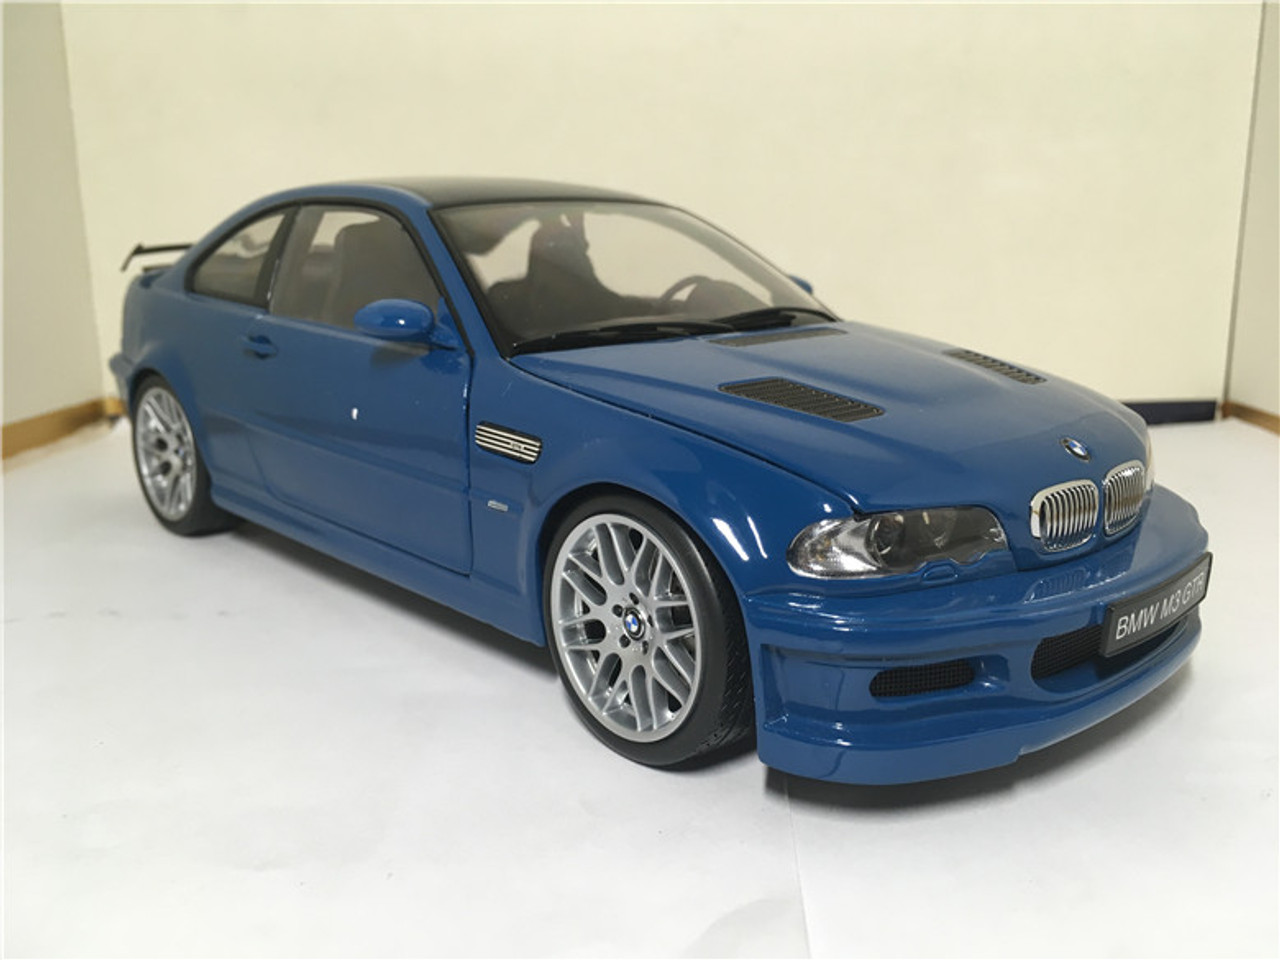 1/18 Kyosho BMW E46 M3 GTR (Blue) Diecast Car Model